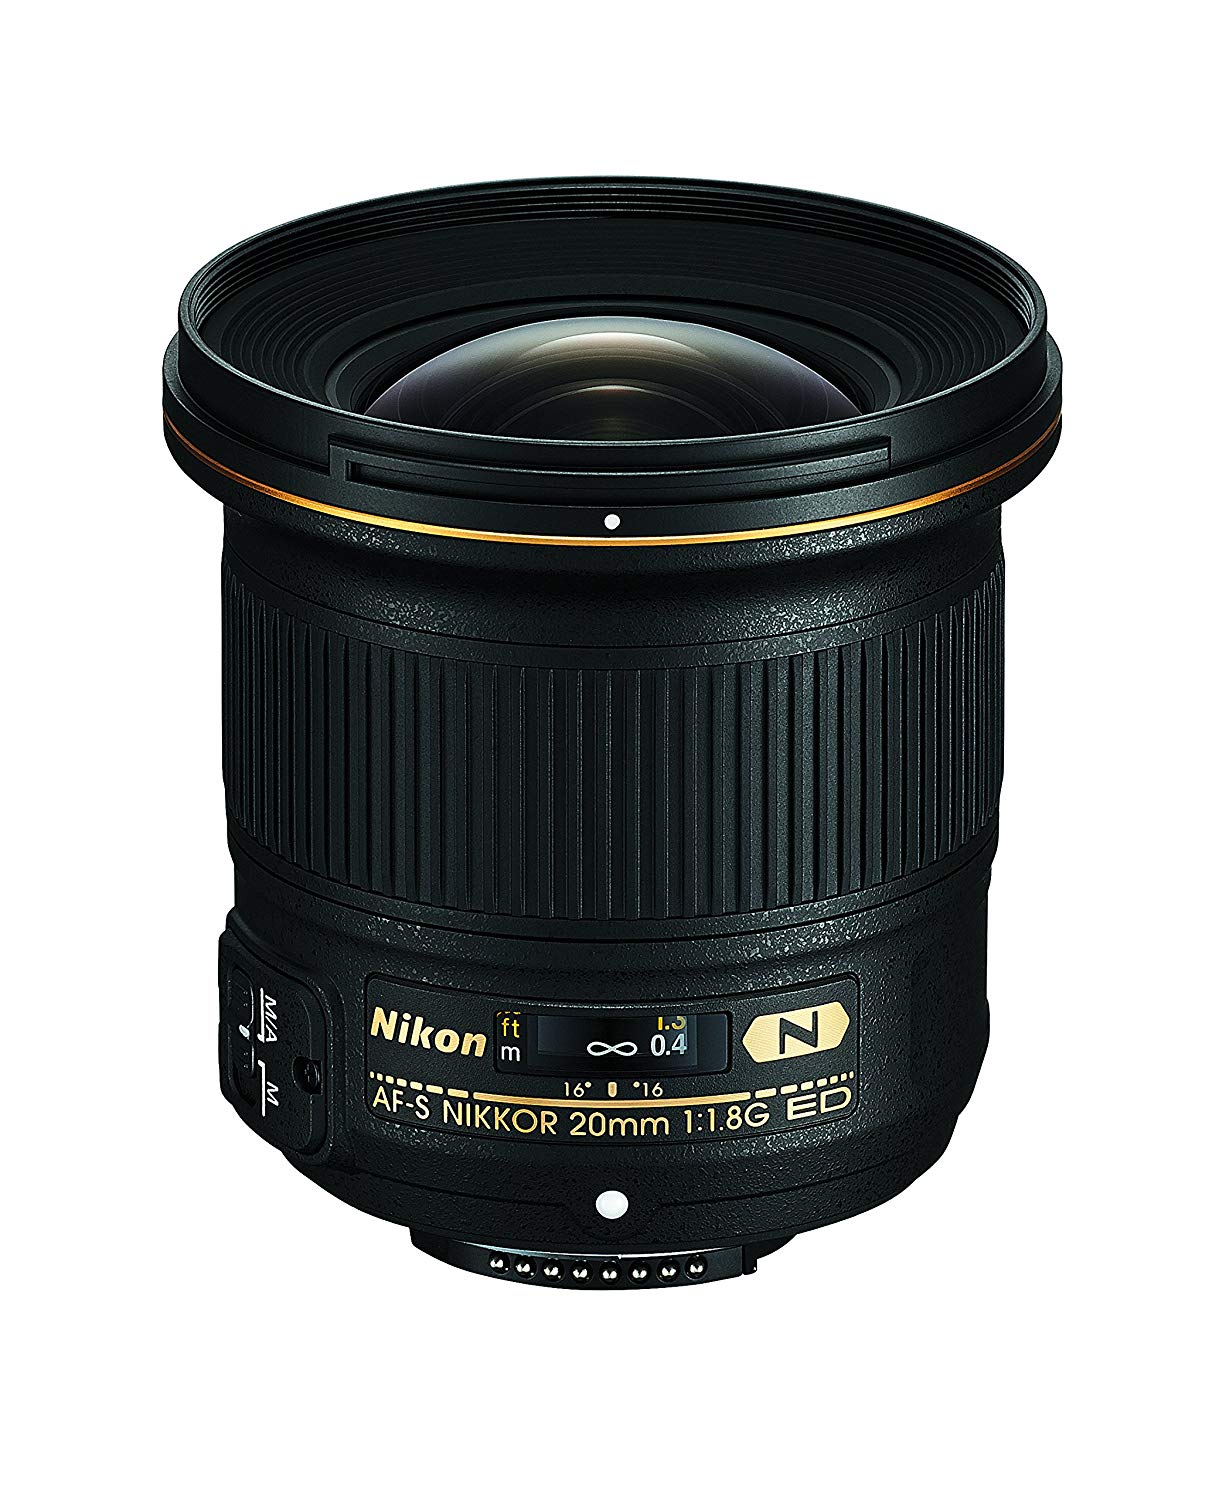 Nikon AF-S FX NIKKOR 20mm f / 1.8G ED Фиксированный объектив с автофокусом для цифровых зеркальных фотоаппаратов